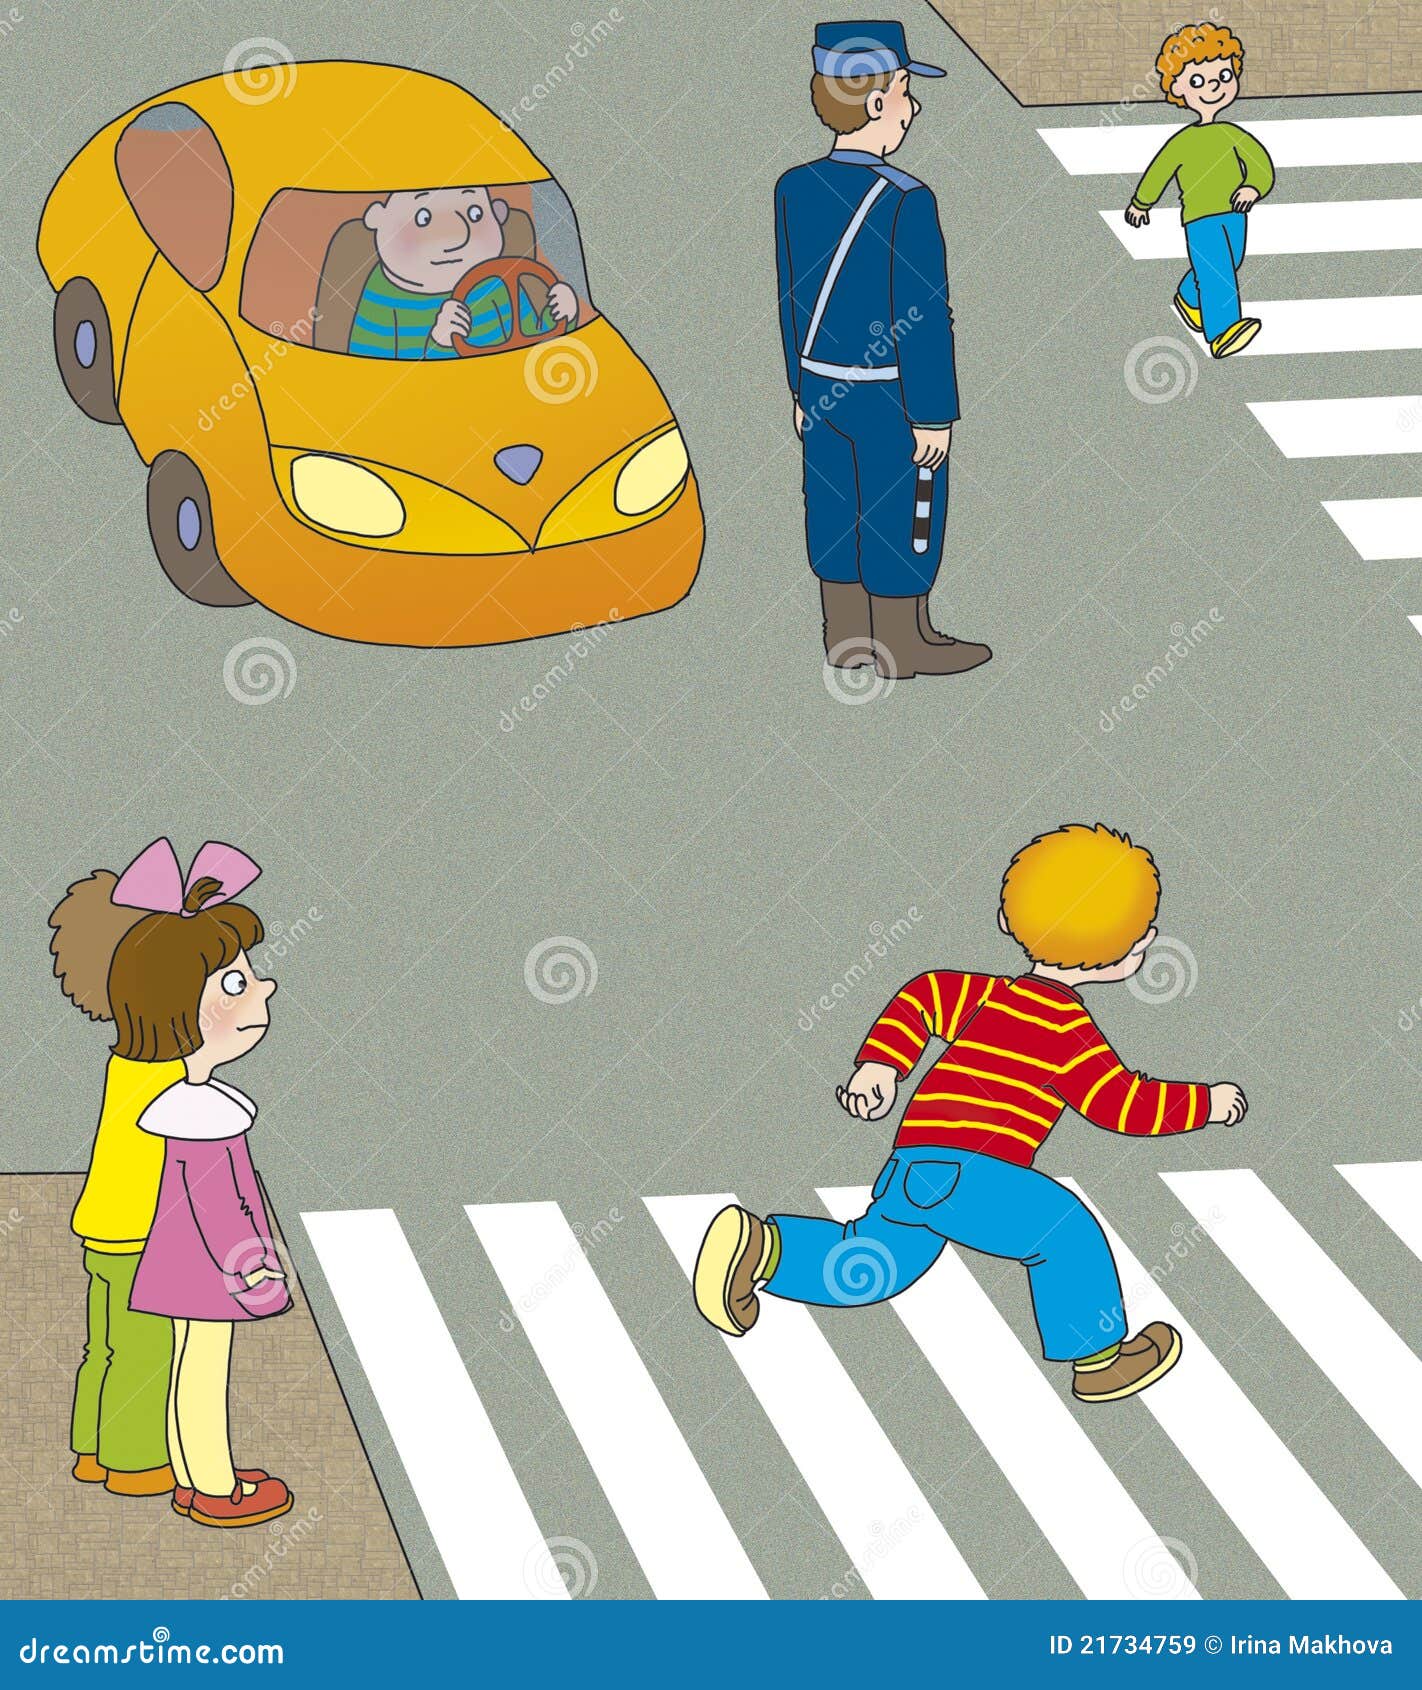 Он переходил дорогу не смотря по сторонам. Дети переходят дорогу. Переходит дорогу иллюстрация. Пешеход рисунок. Нарисовать пешеходный переход.